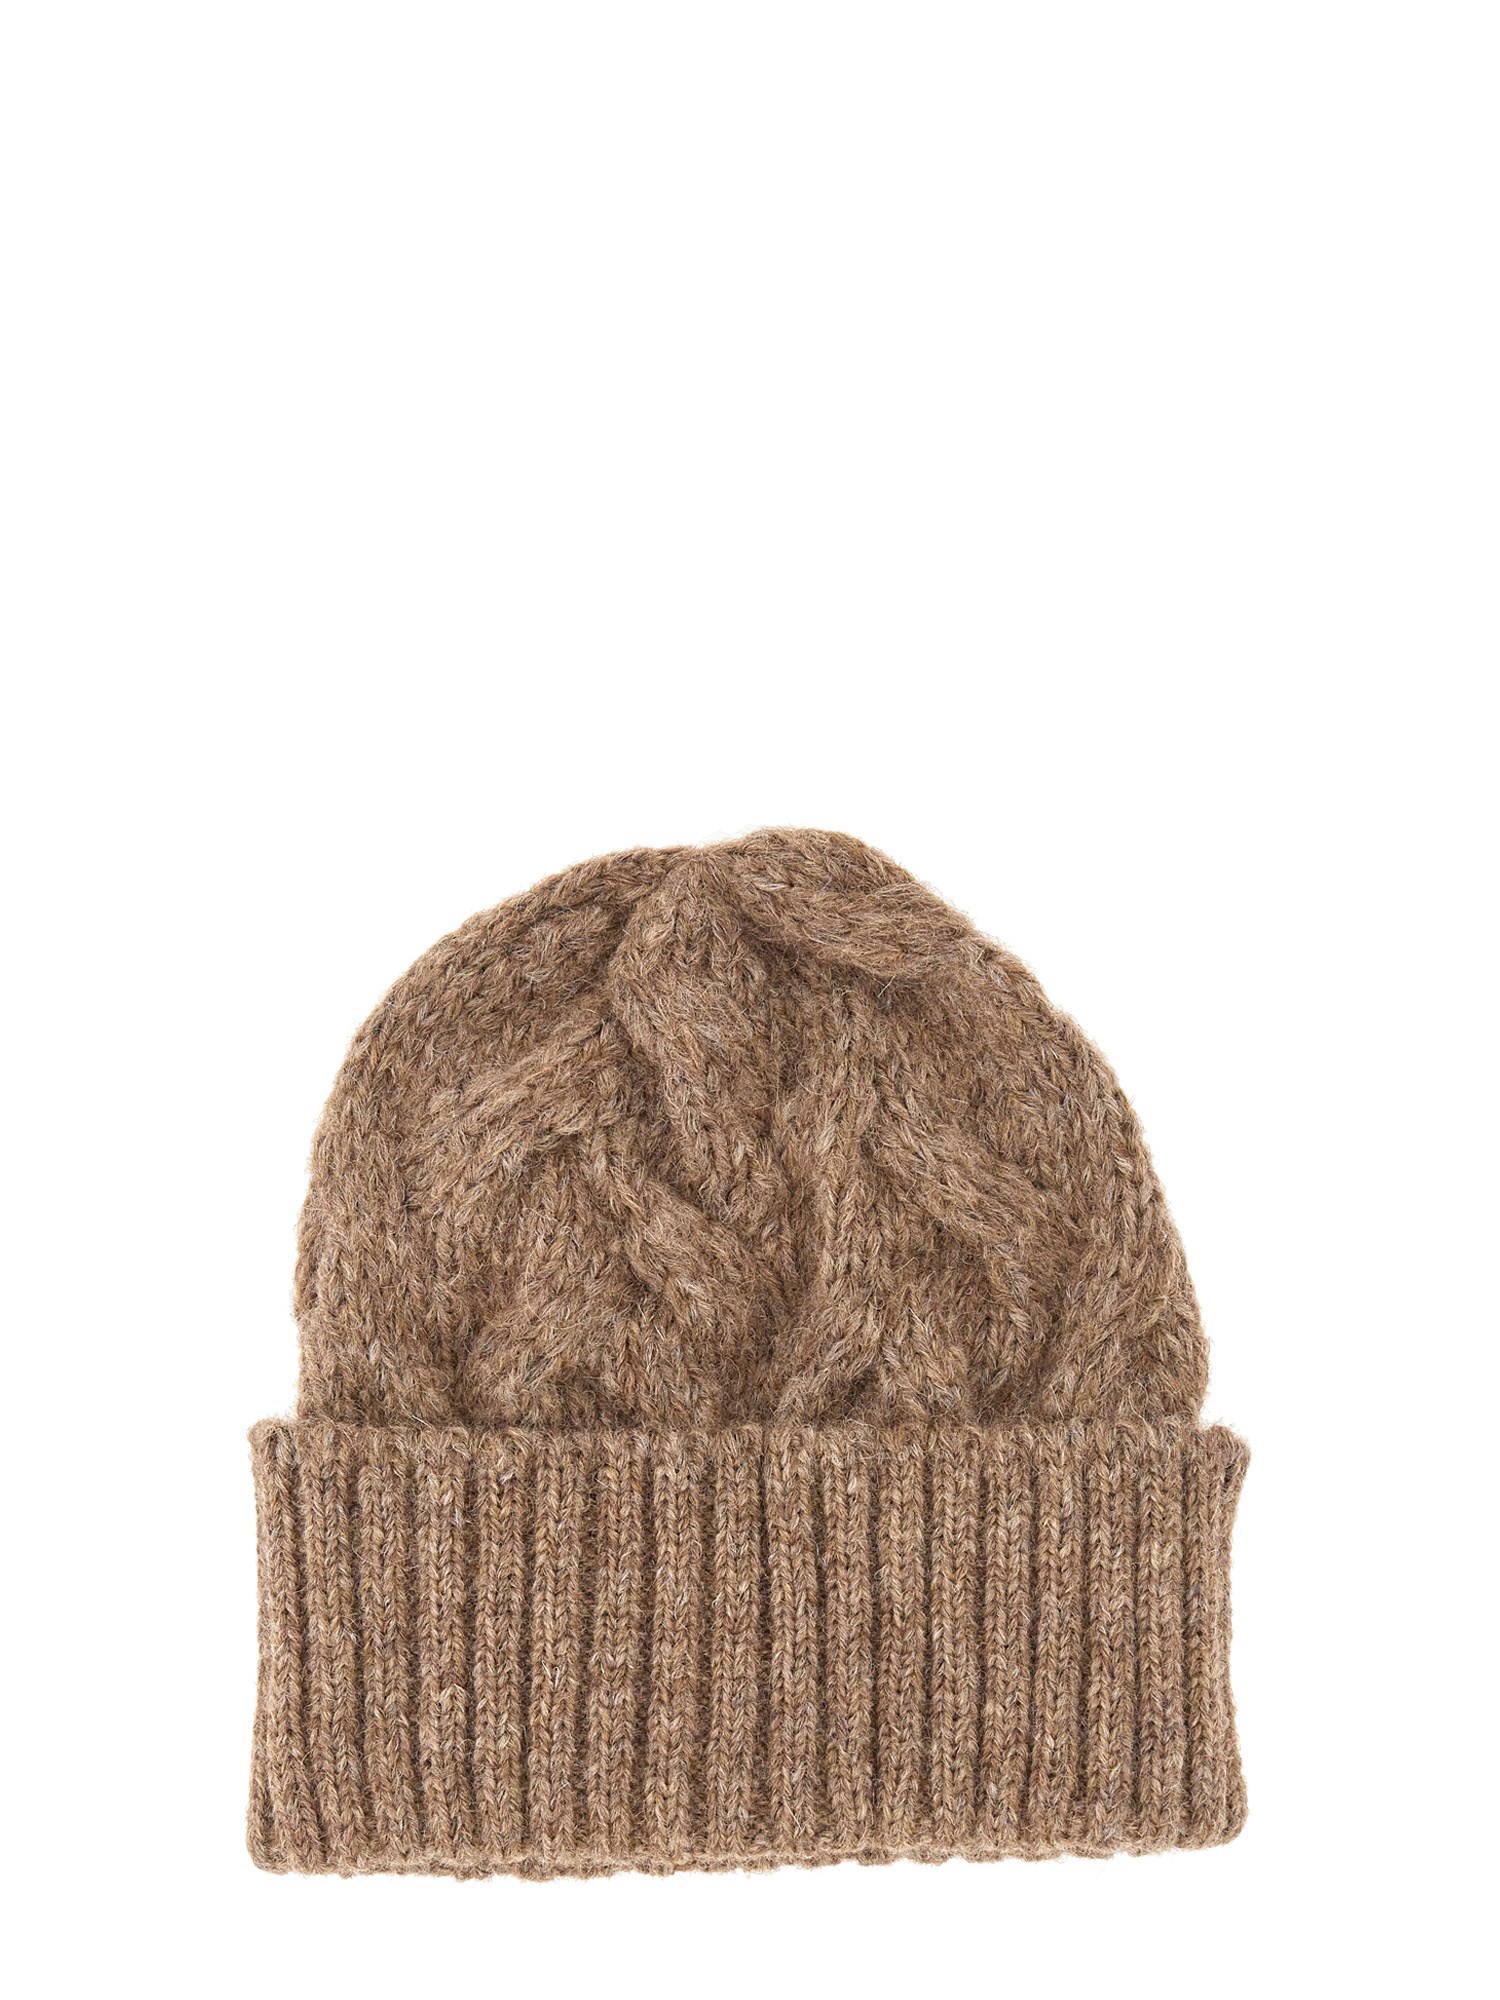 Séfr séfr knit hat